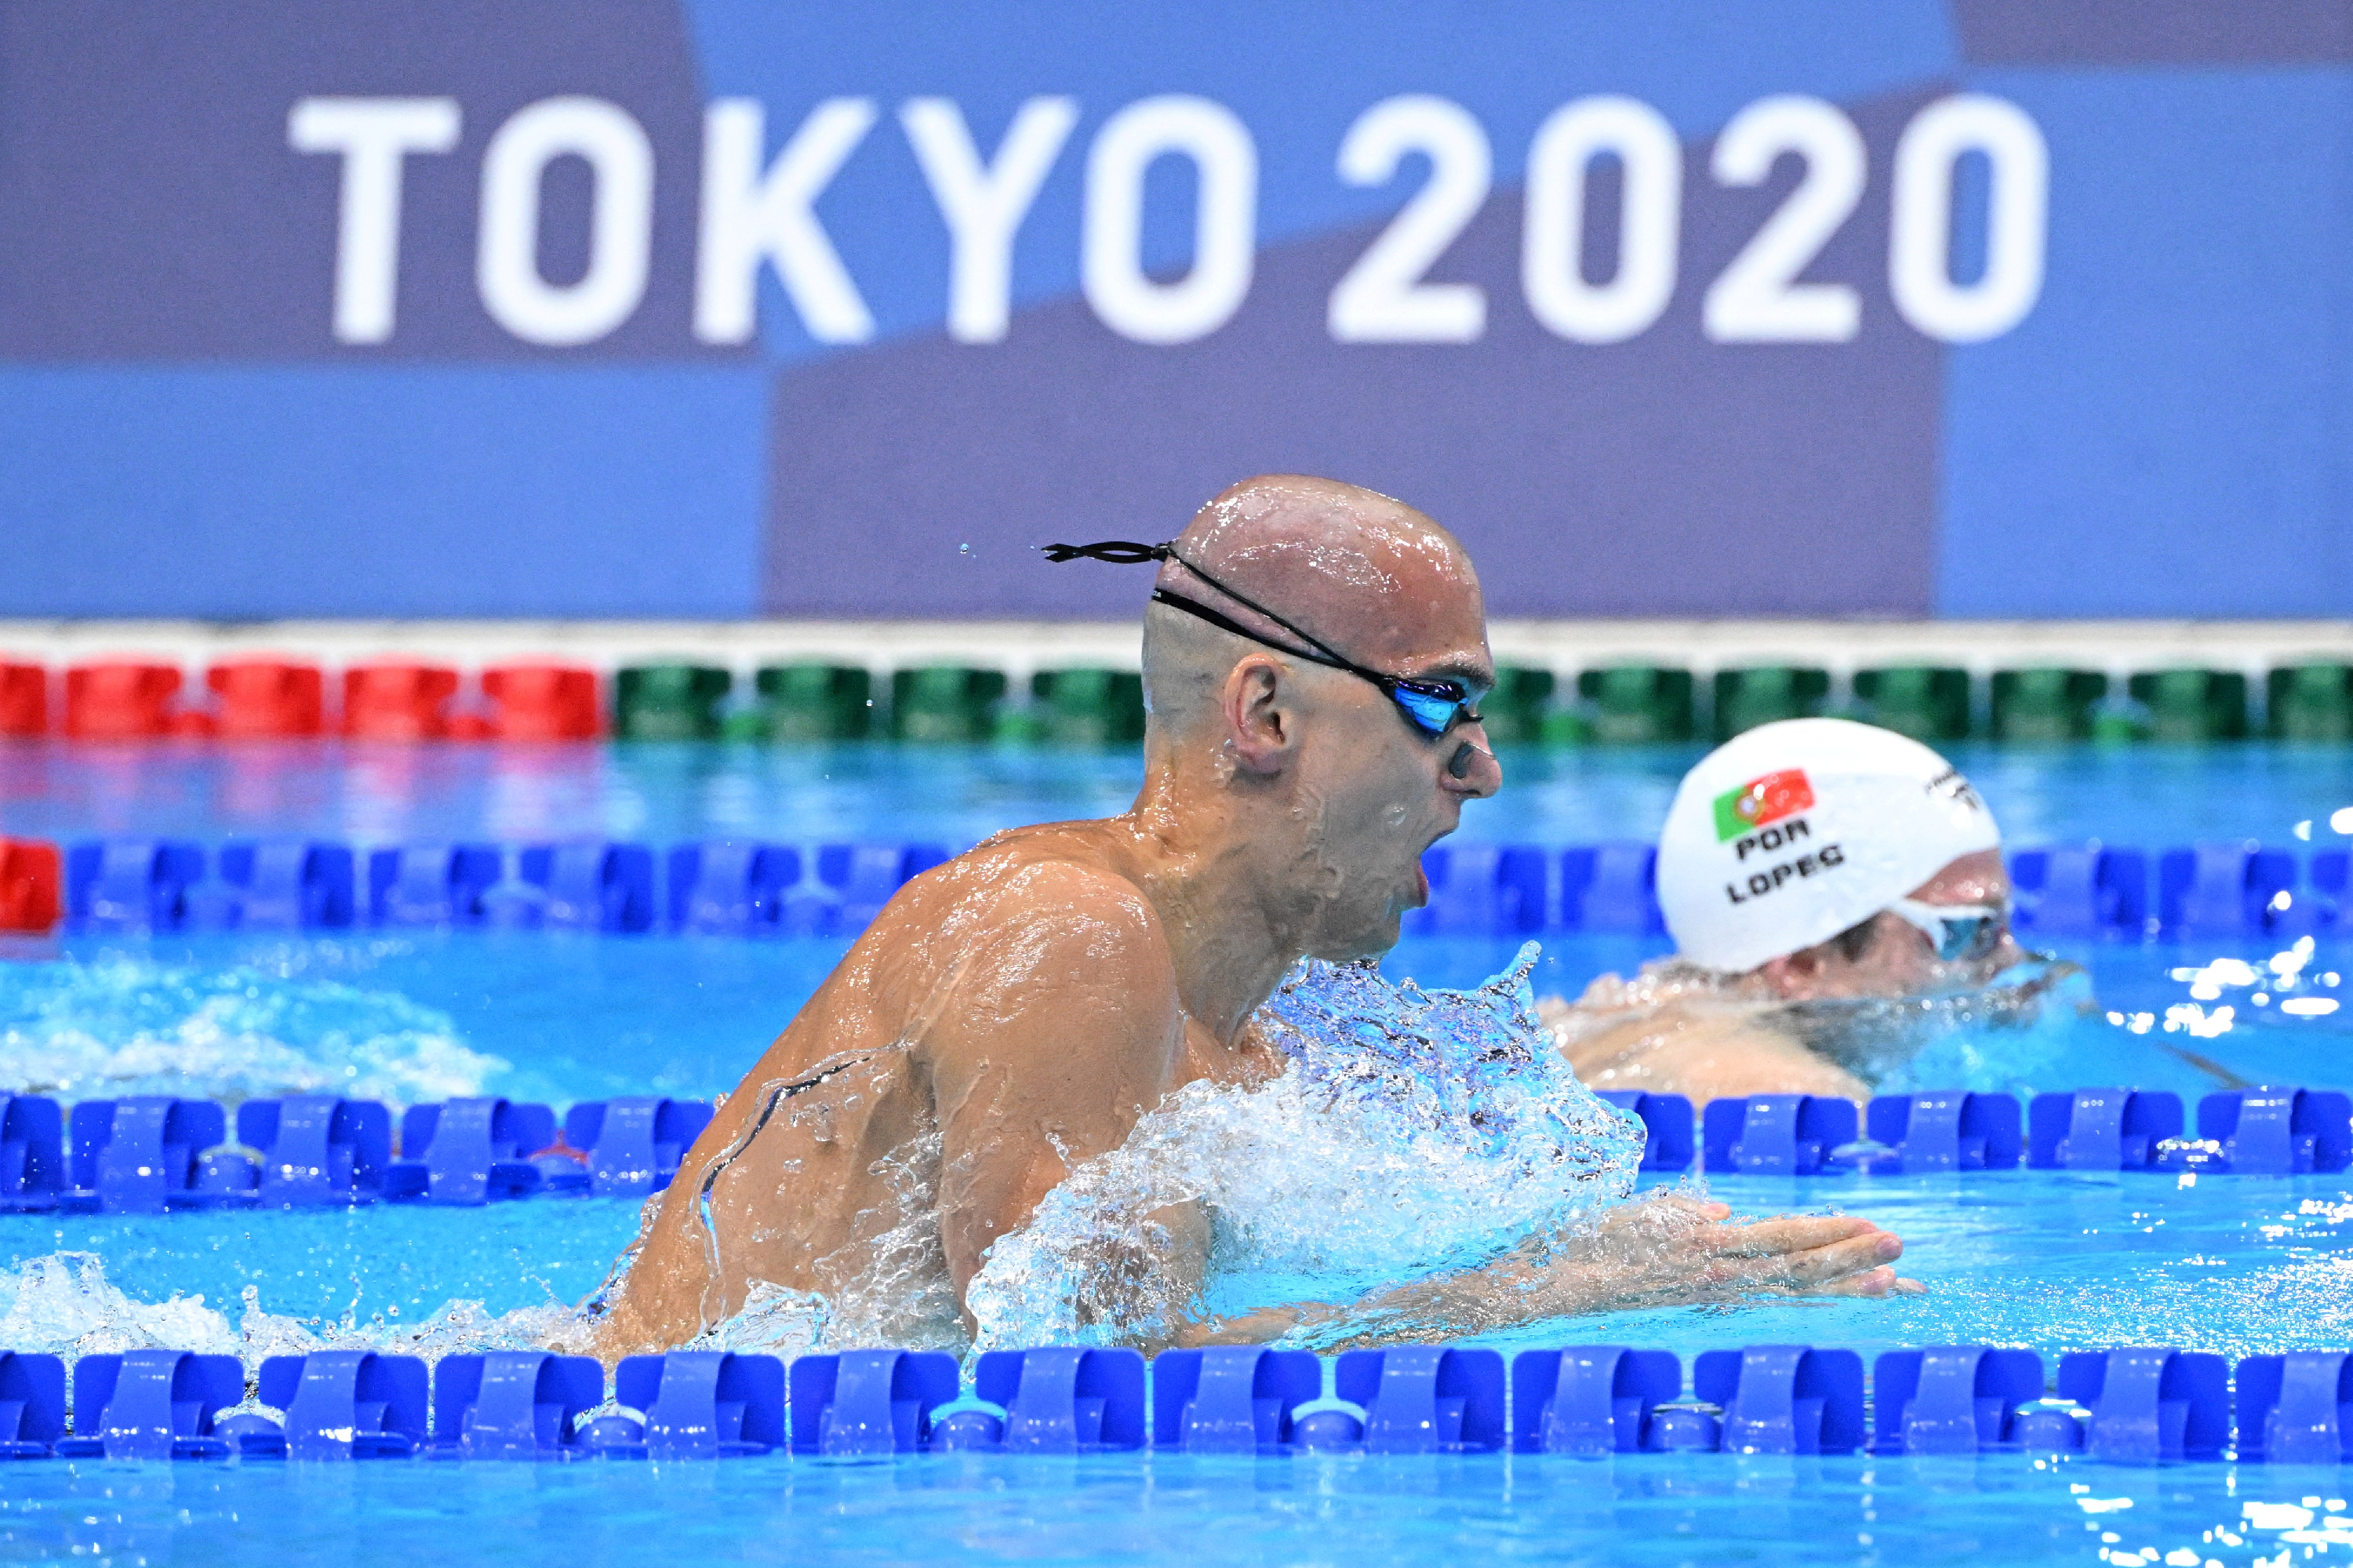 Utoljára úszik olimpián Cseh László, hajnalban kell érte szorítani